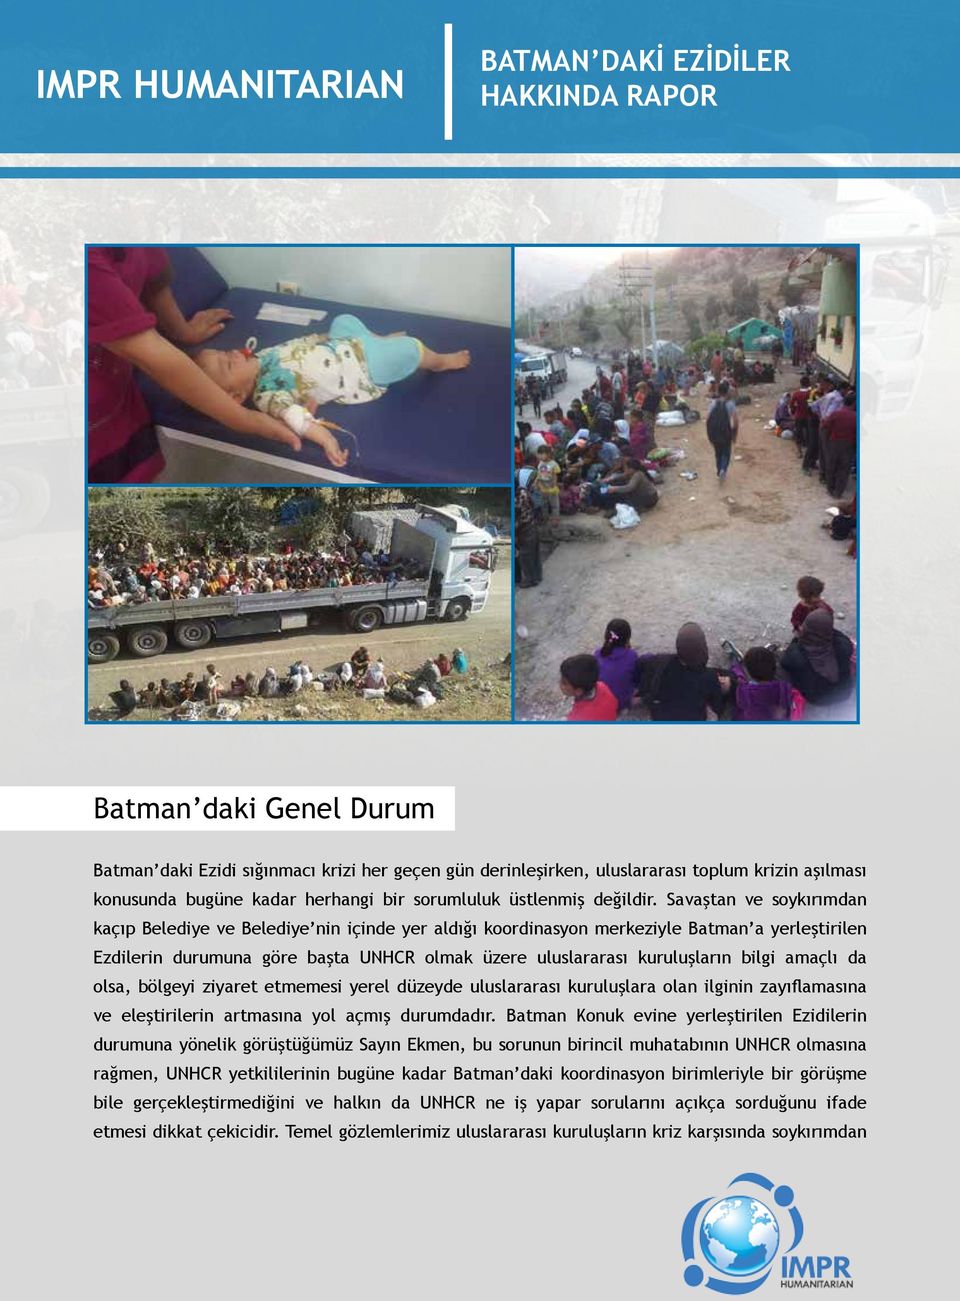 Savaştan ve soykırımdan kaçıp Belediye ve Belediye nin içinde yer aldığı koordinasyon merkeziyle Batman a yerleştirilen Ezdilerin durumuna göre başta UNHCR olmak üzere uluslararası kuruluşların bilgi